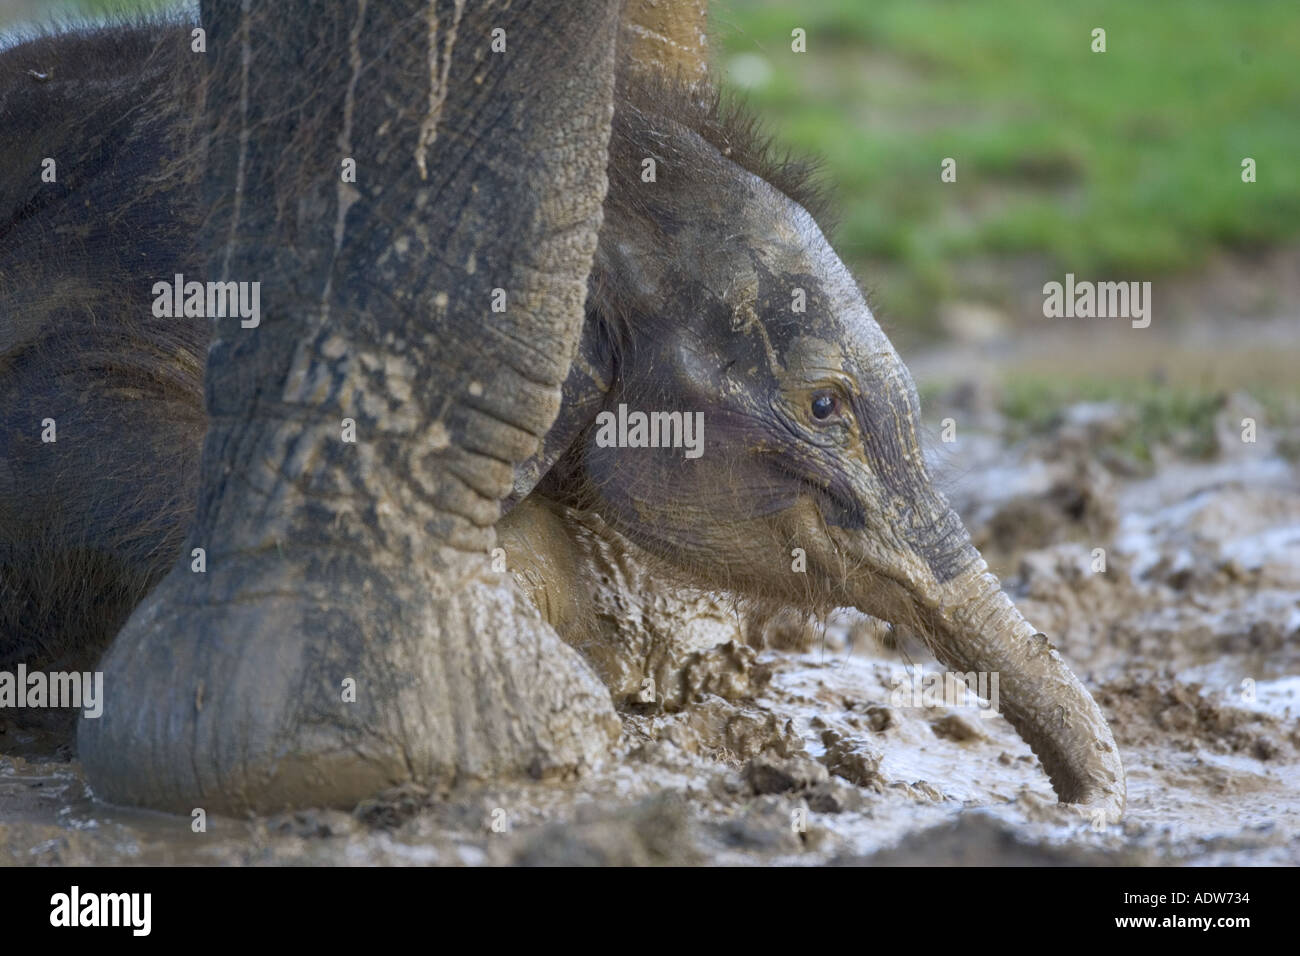 Veau de l'éléphant d'Asie à 6mois Banque D'Images